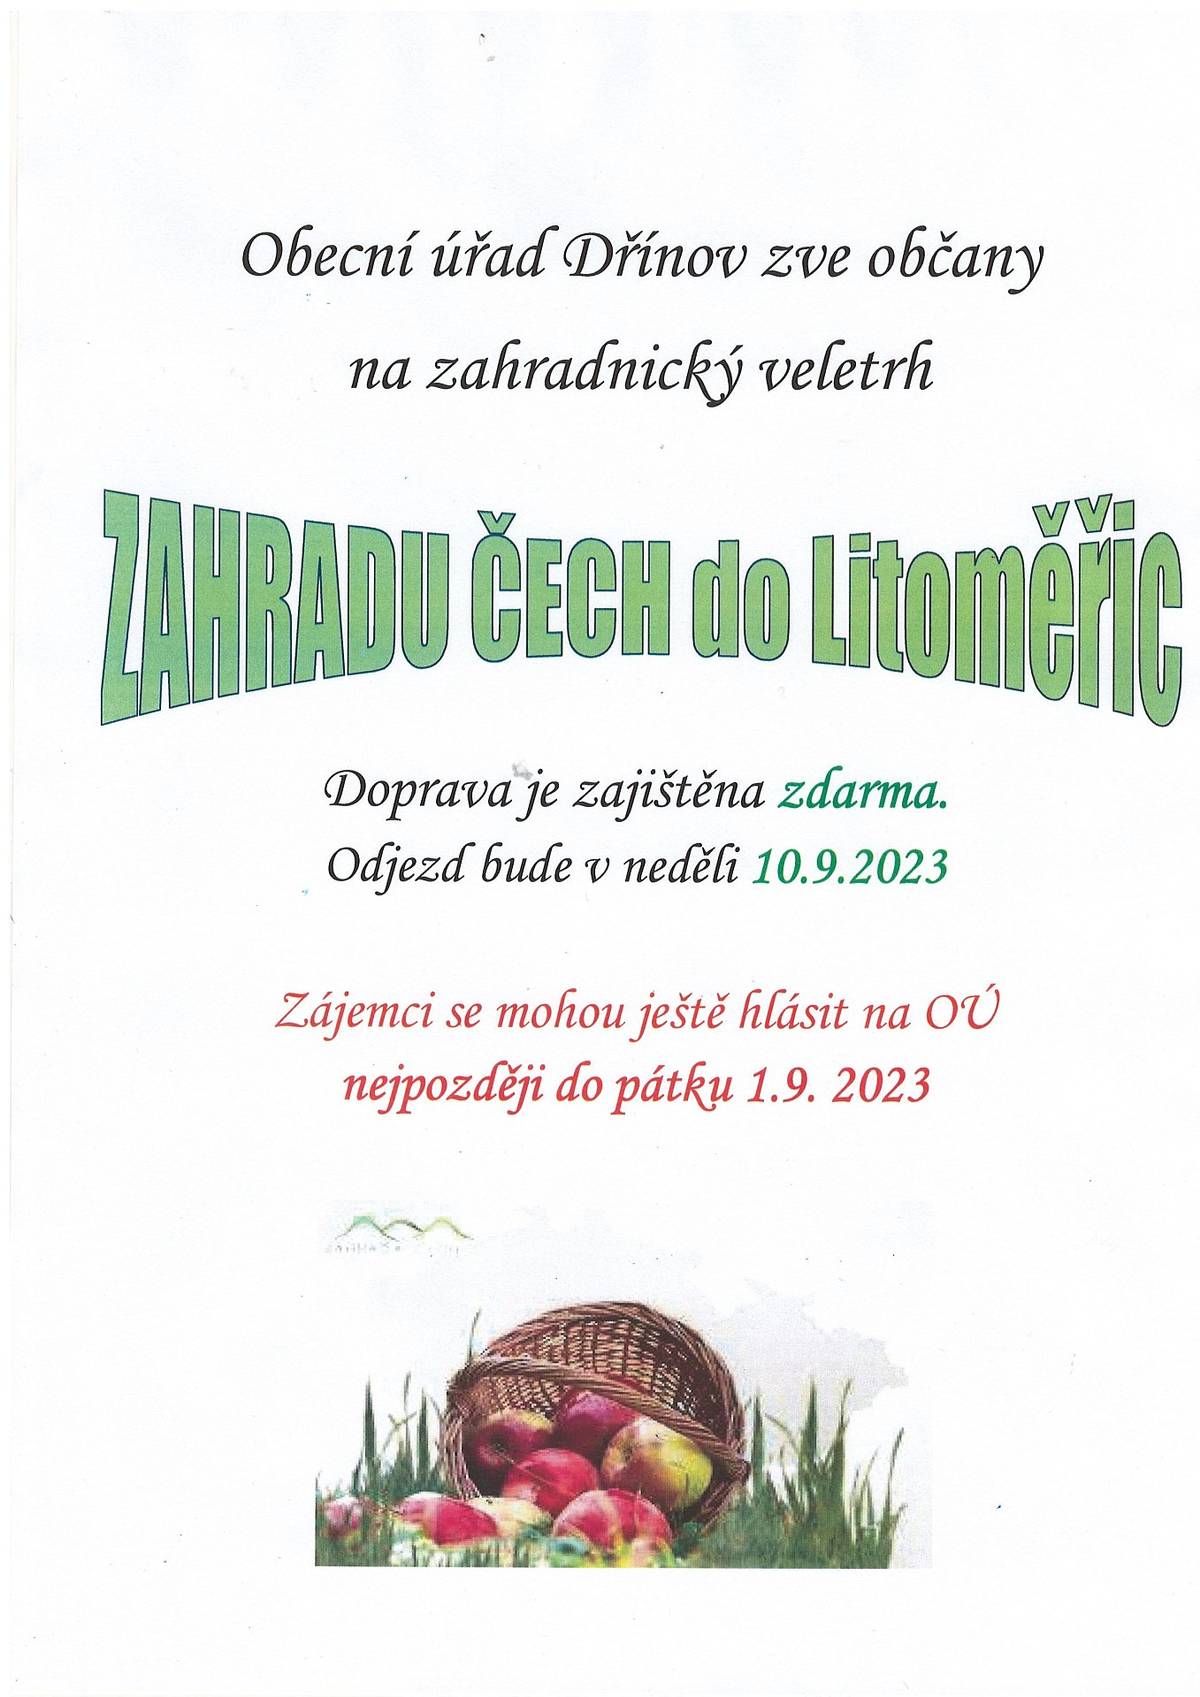 Obec Dřínov pořádá v neděli 10.9.2023 zájezd na Zahradu Čech, zájemci se mohou hlásit na OU do pátku 1.9.2023.